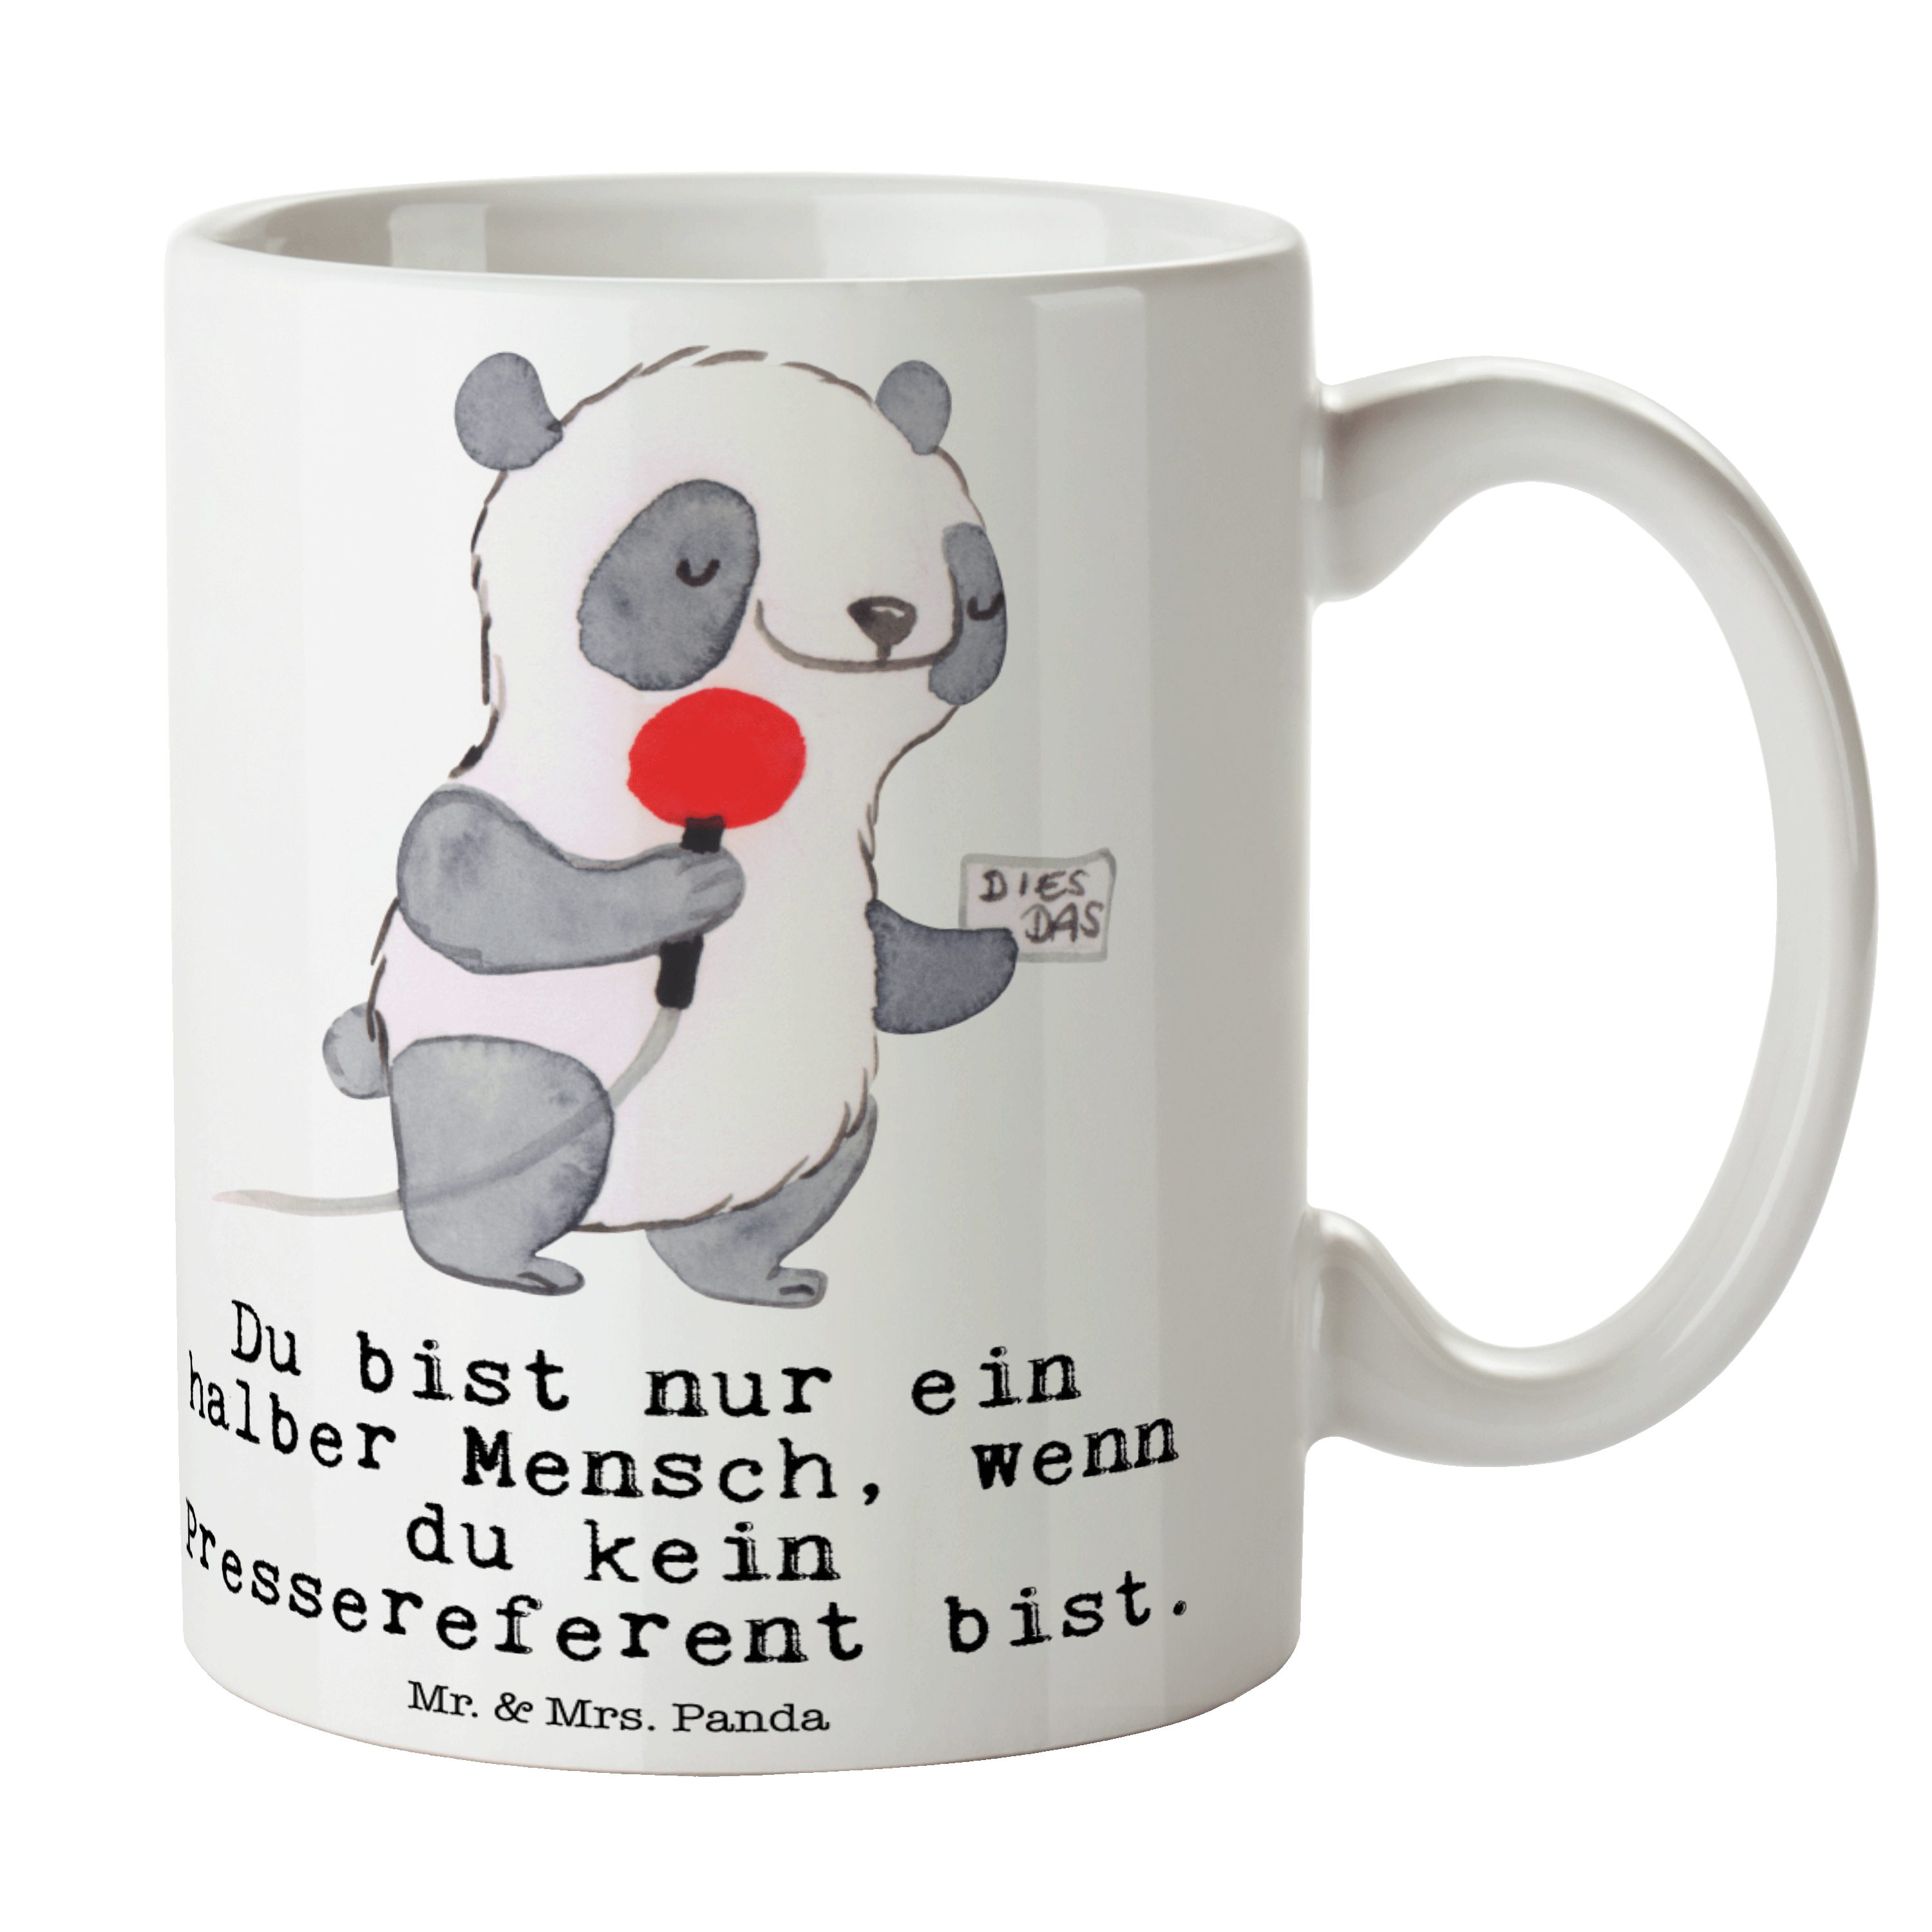 Mr. & Mrs. Panda Tasse Pressereferent mit Herz - Weiß - Geschenk, Kaffeetasse, Pressemitarbe, Keramik